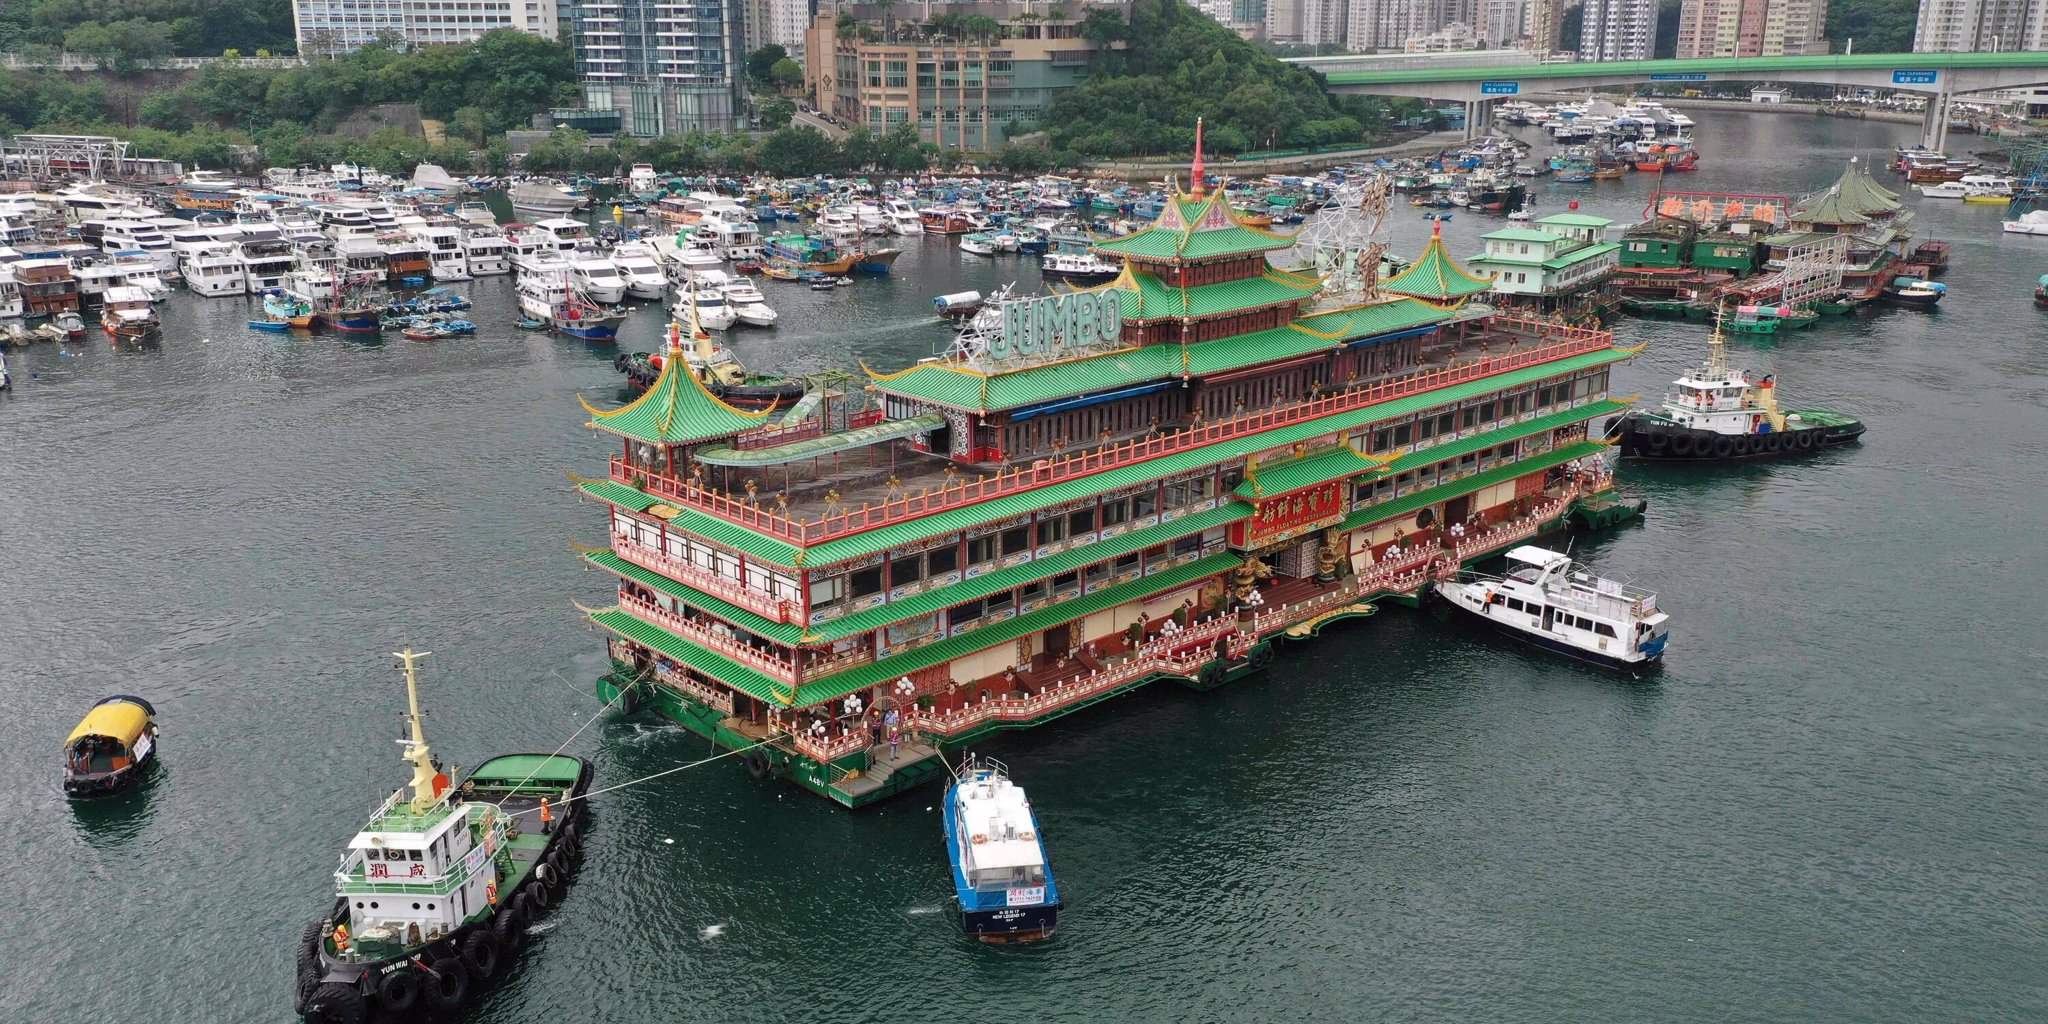 Famous Hong Kong landmark Jumbo Floating has sunk